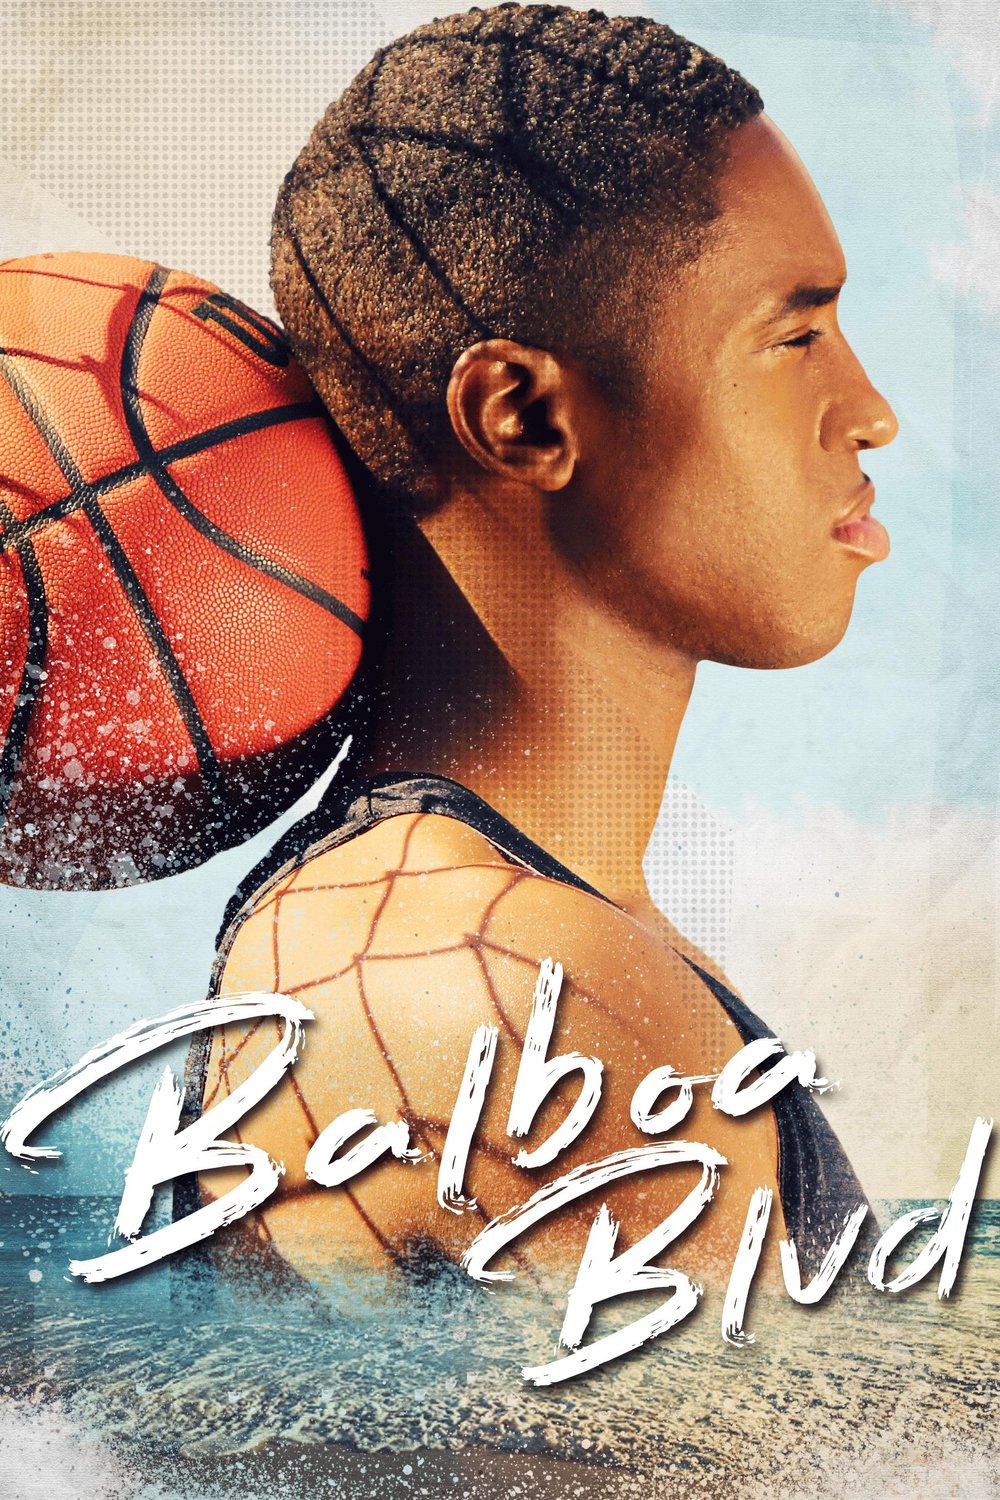 L'affiche du film Balboa Blvd